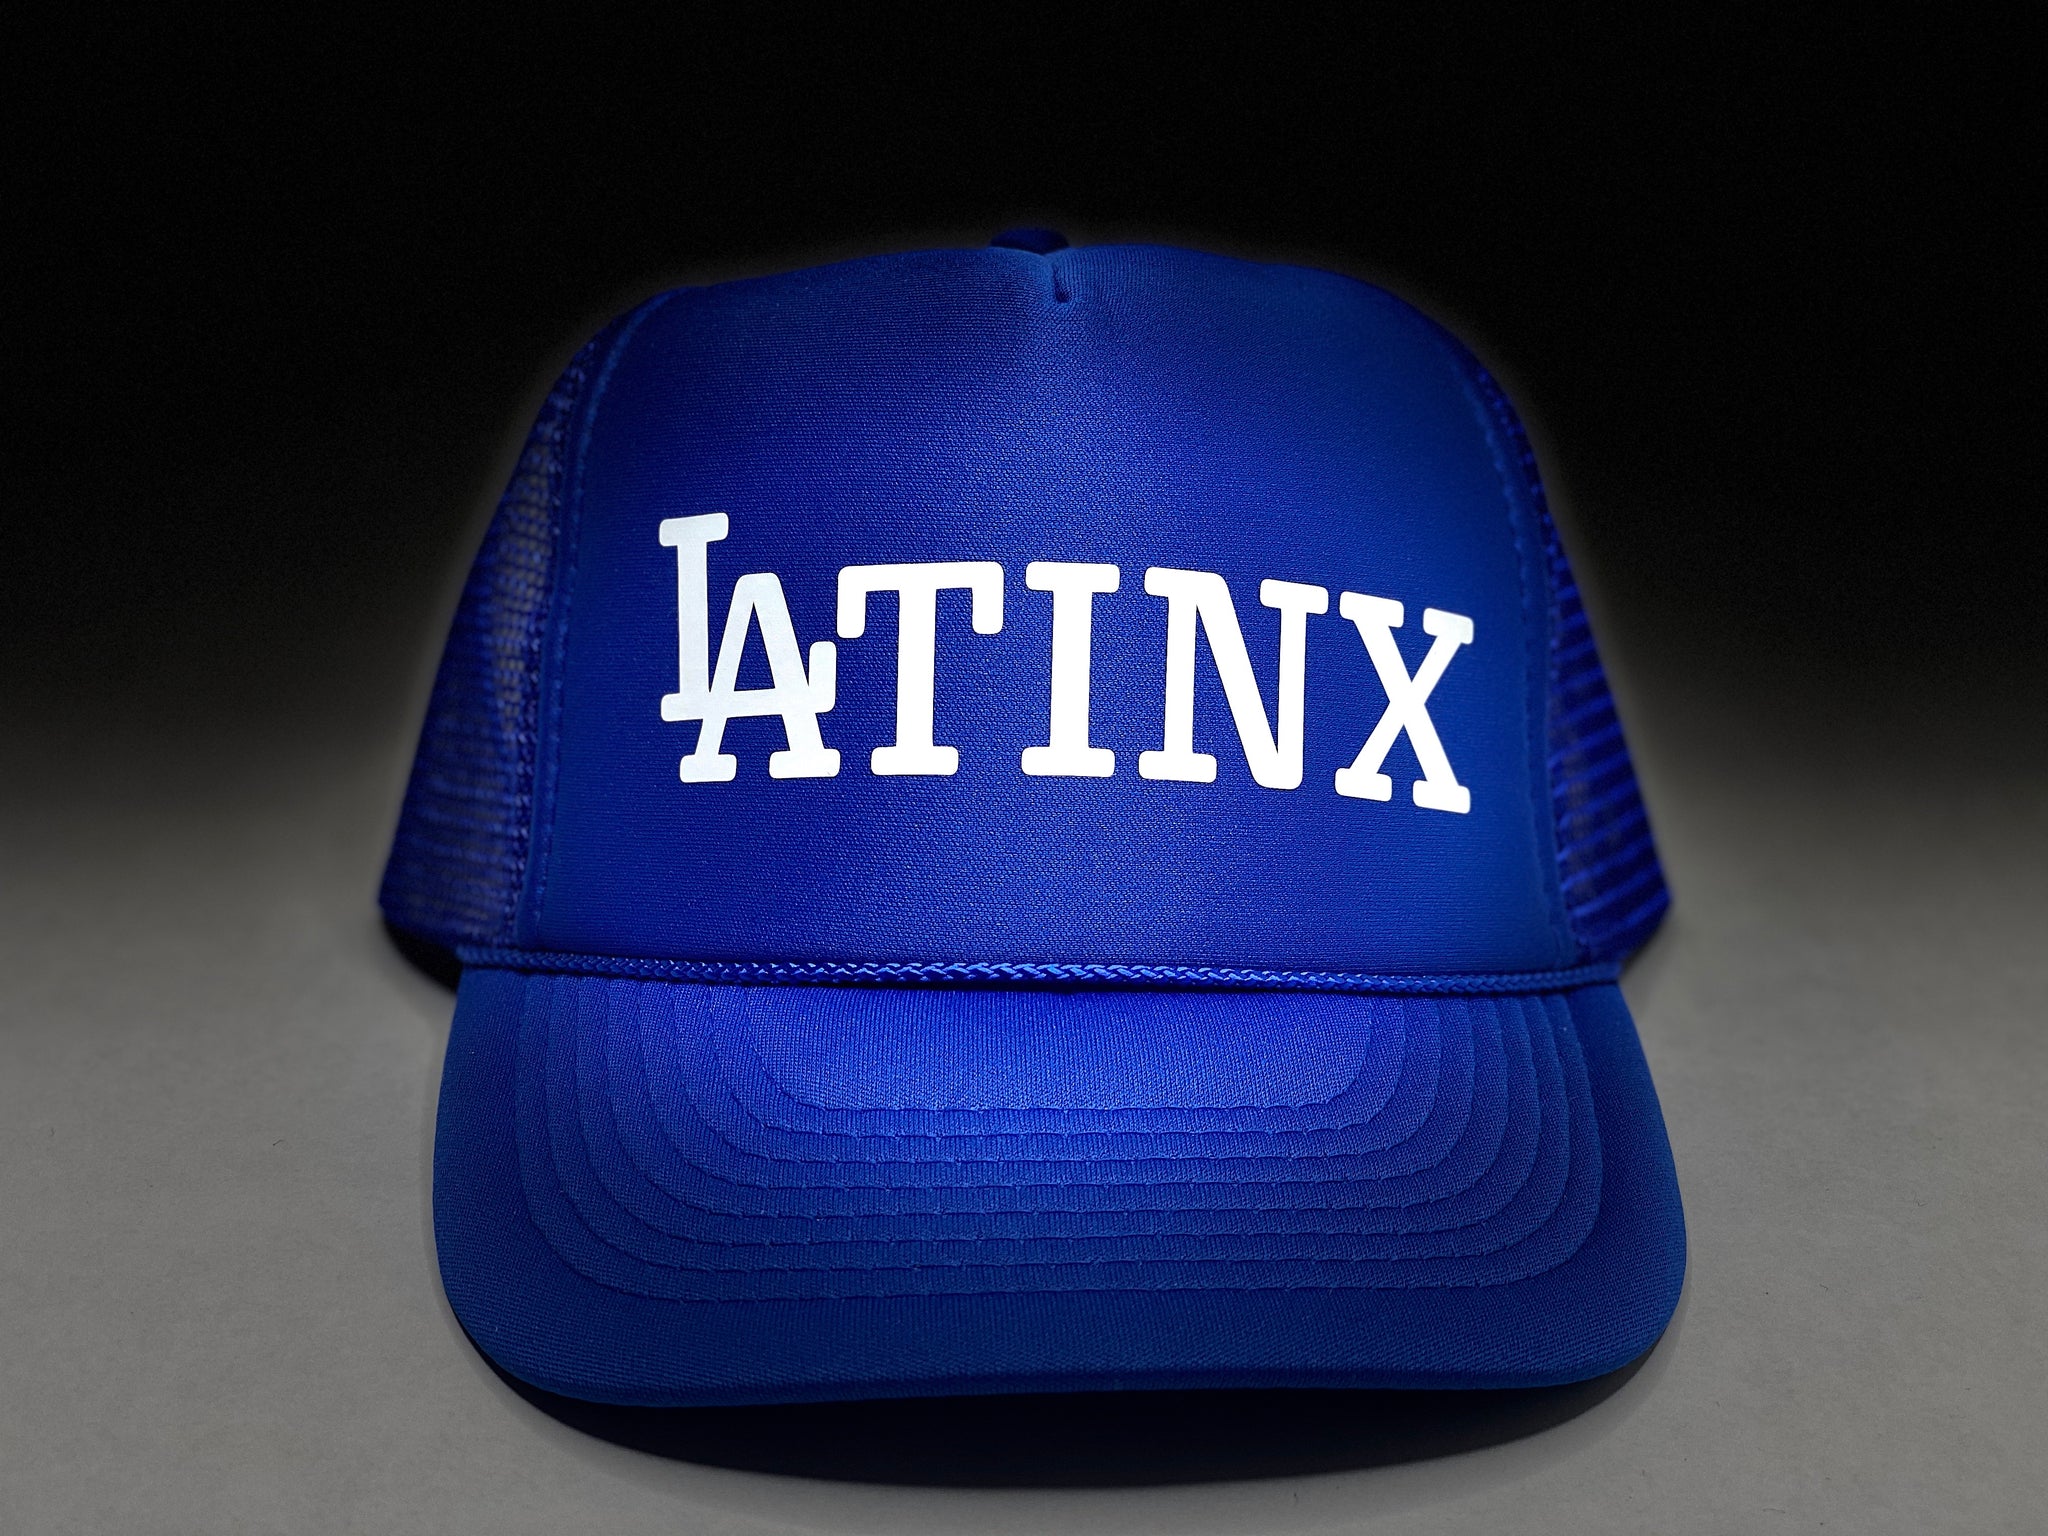 LA-tinX Trucker Hat - Blue